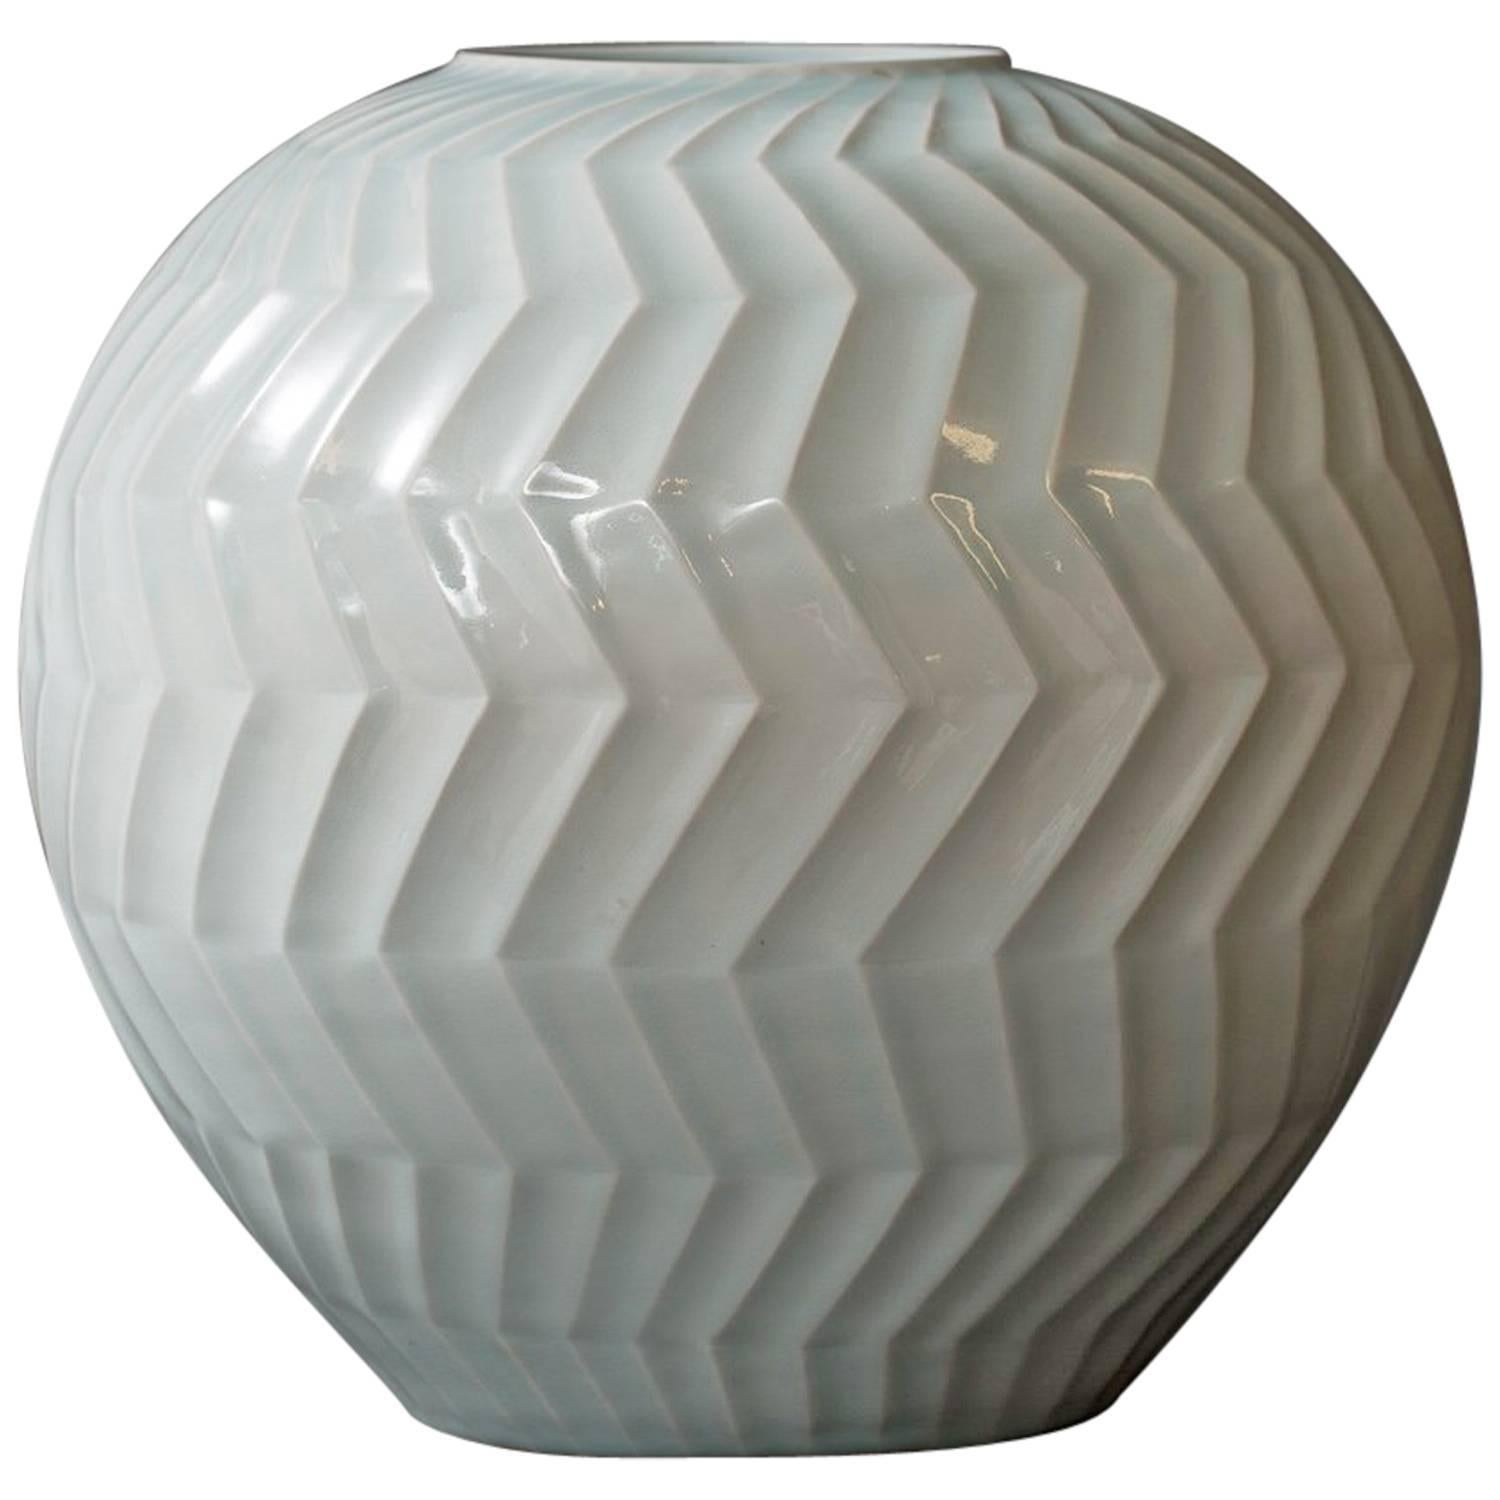 Large Celadon Ceramic Vase